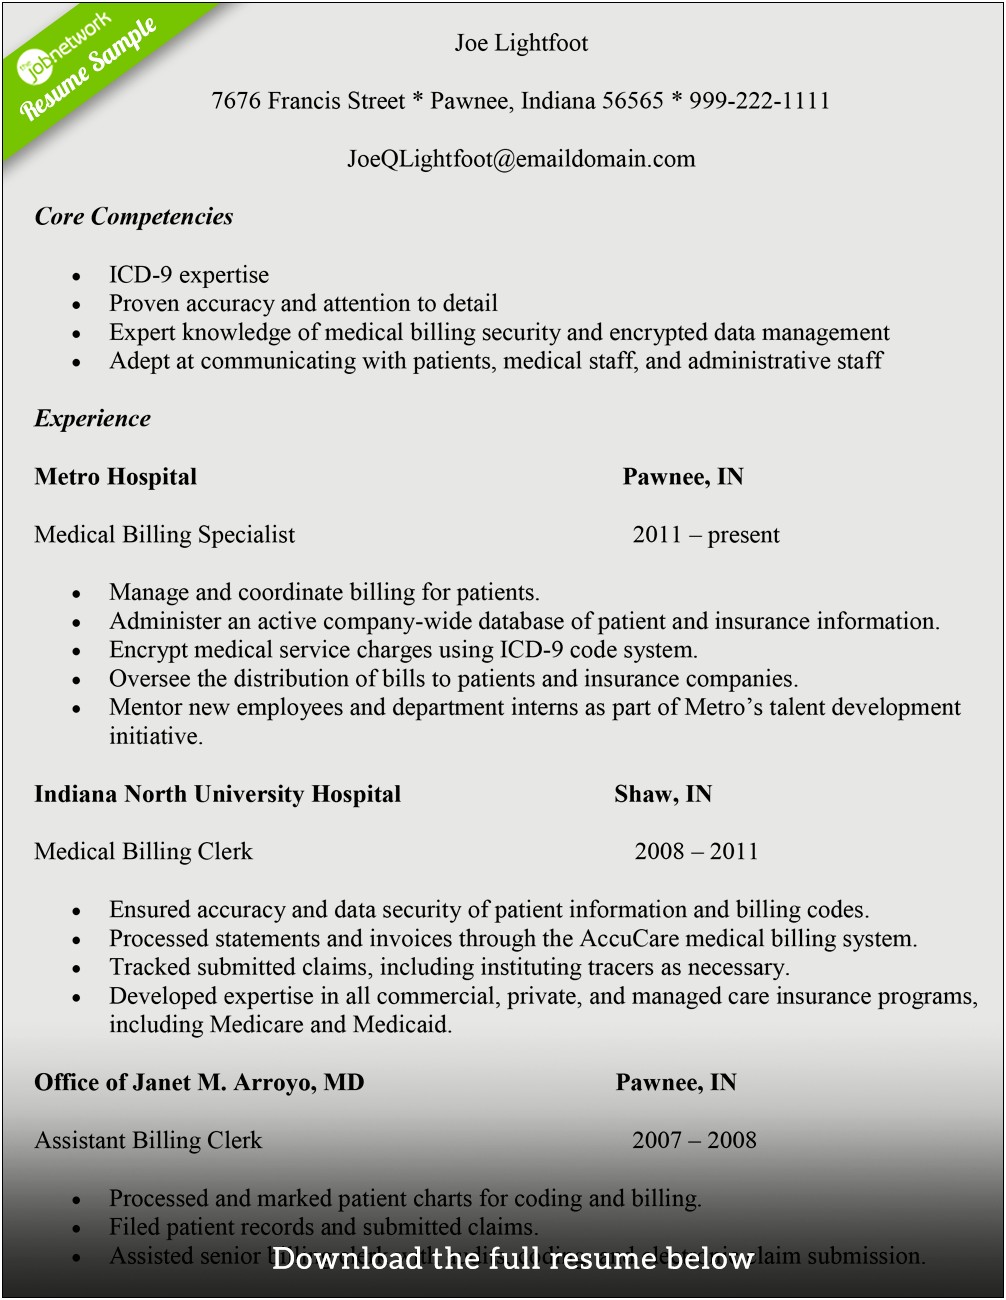 Resume For Hospital Billing Manager